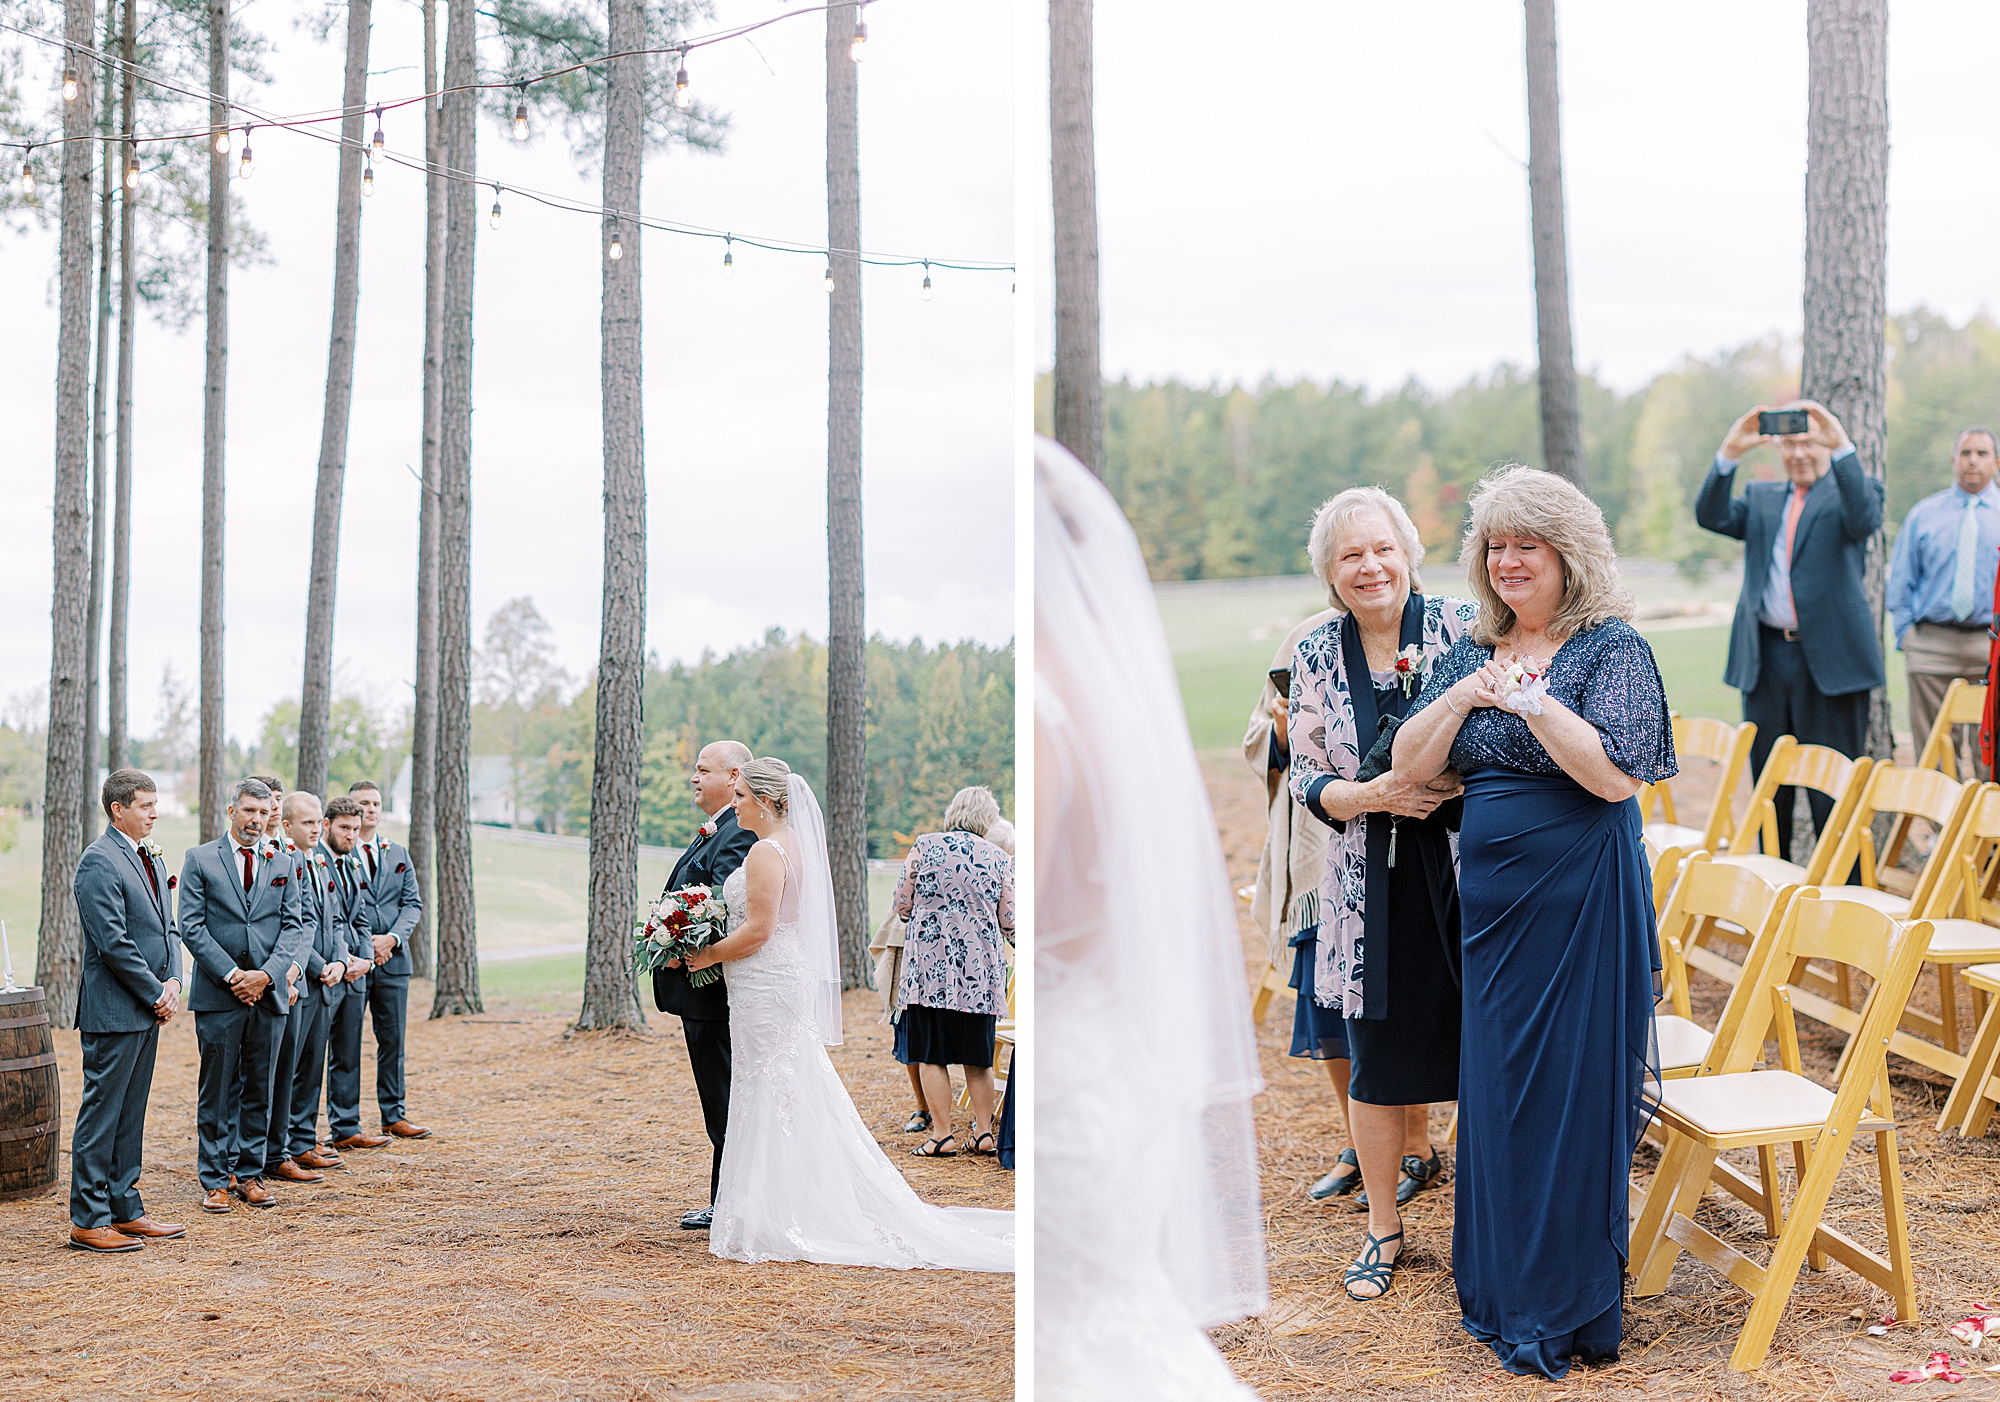 Wedding ceremony in pine trees.